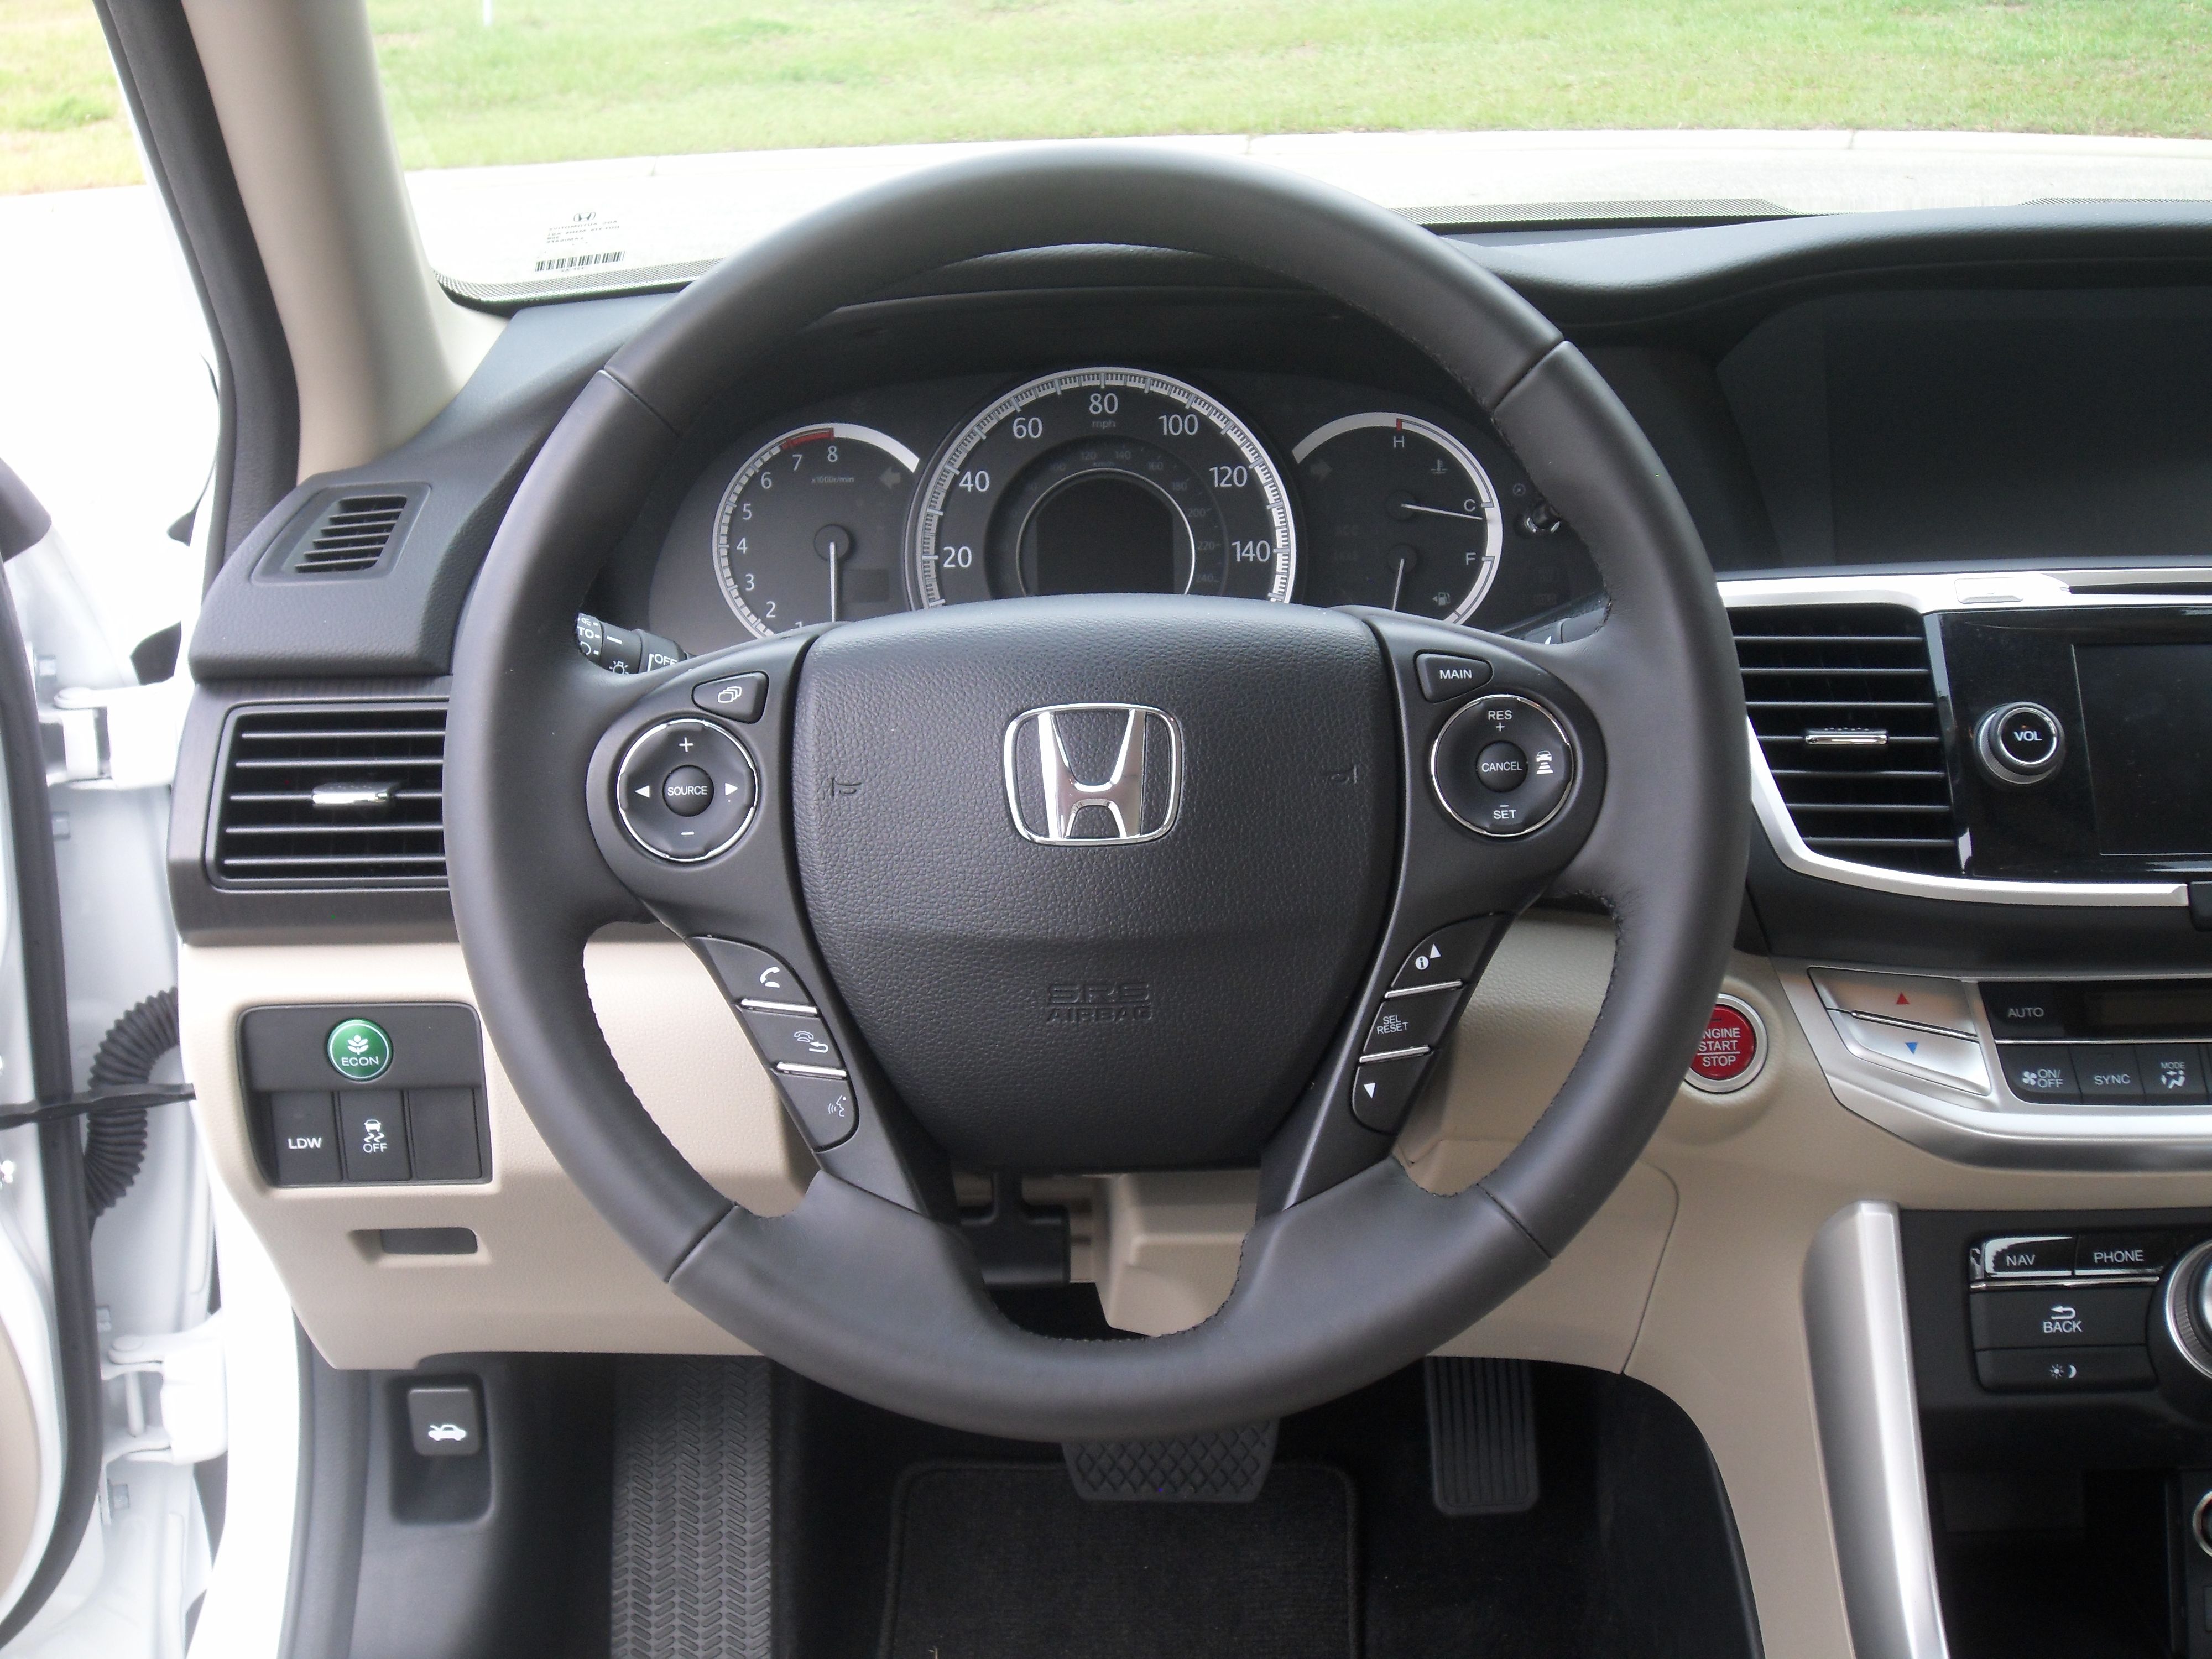 2014 Honda Accord Touring - Driven